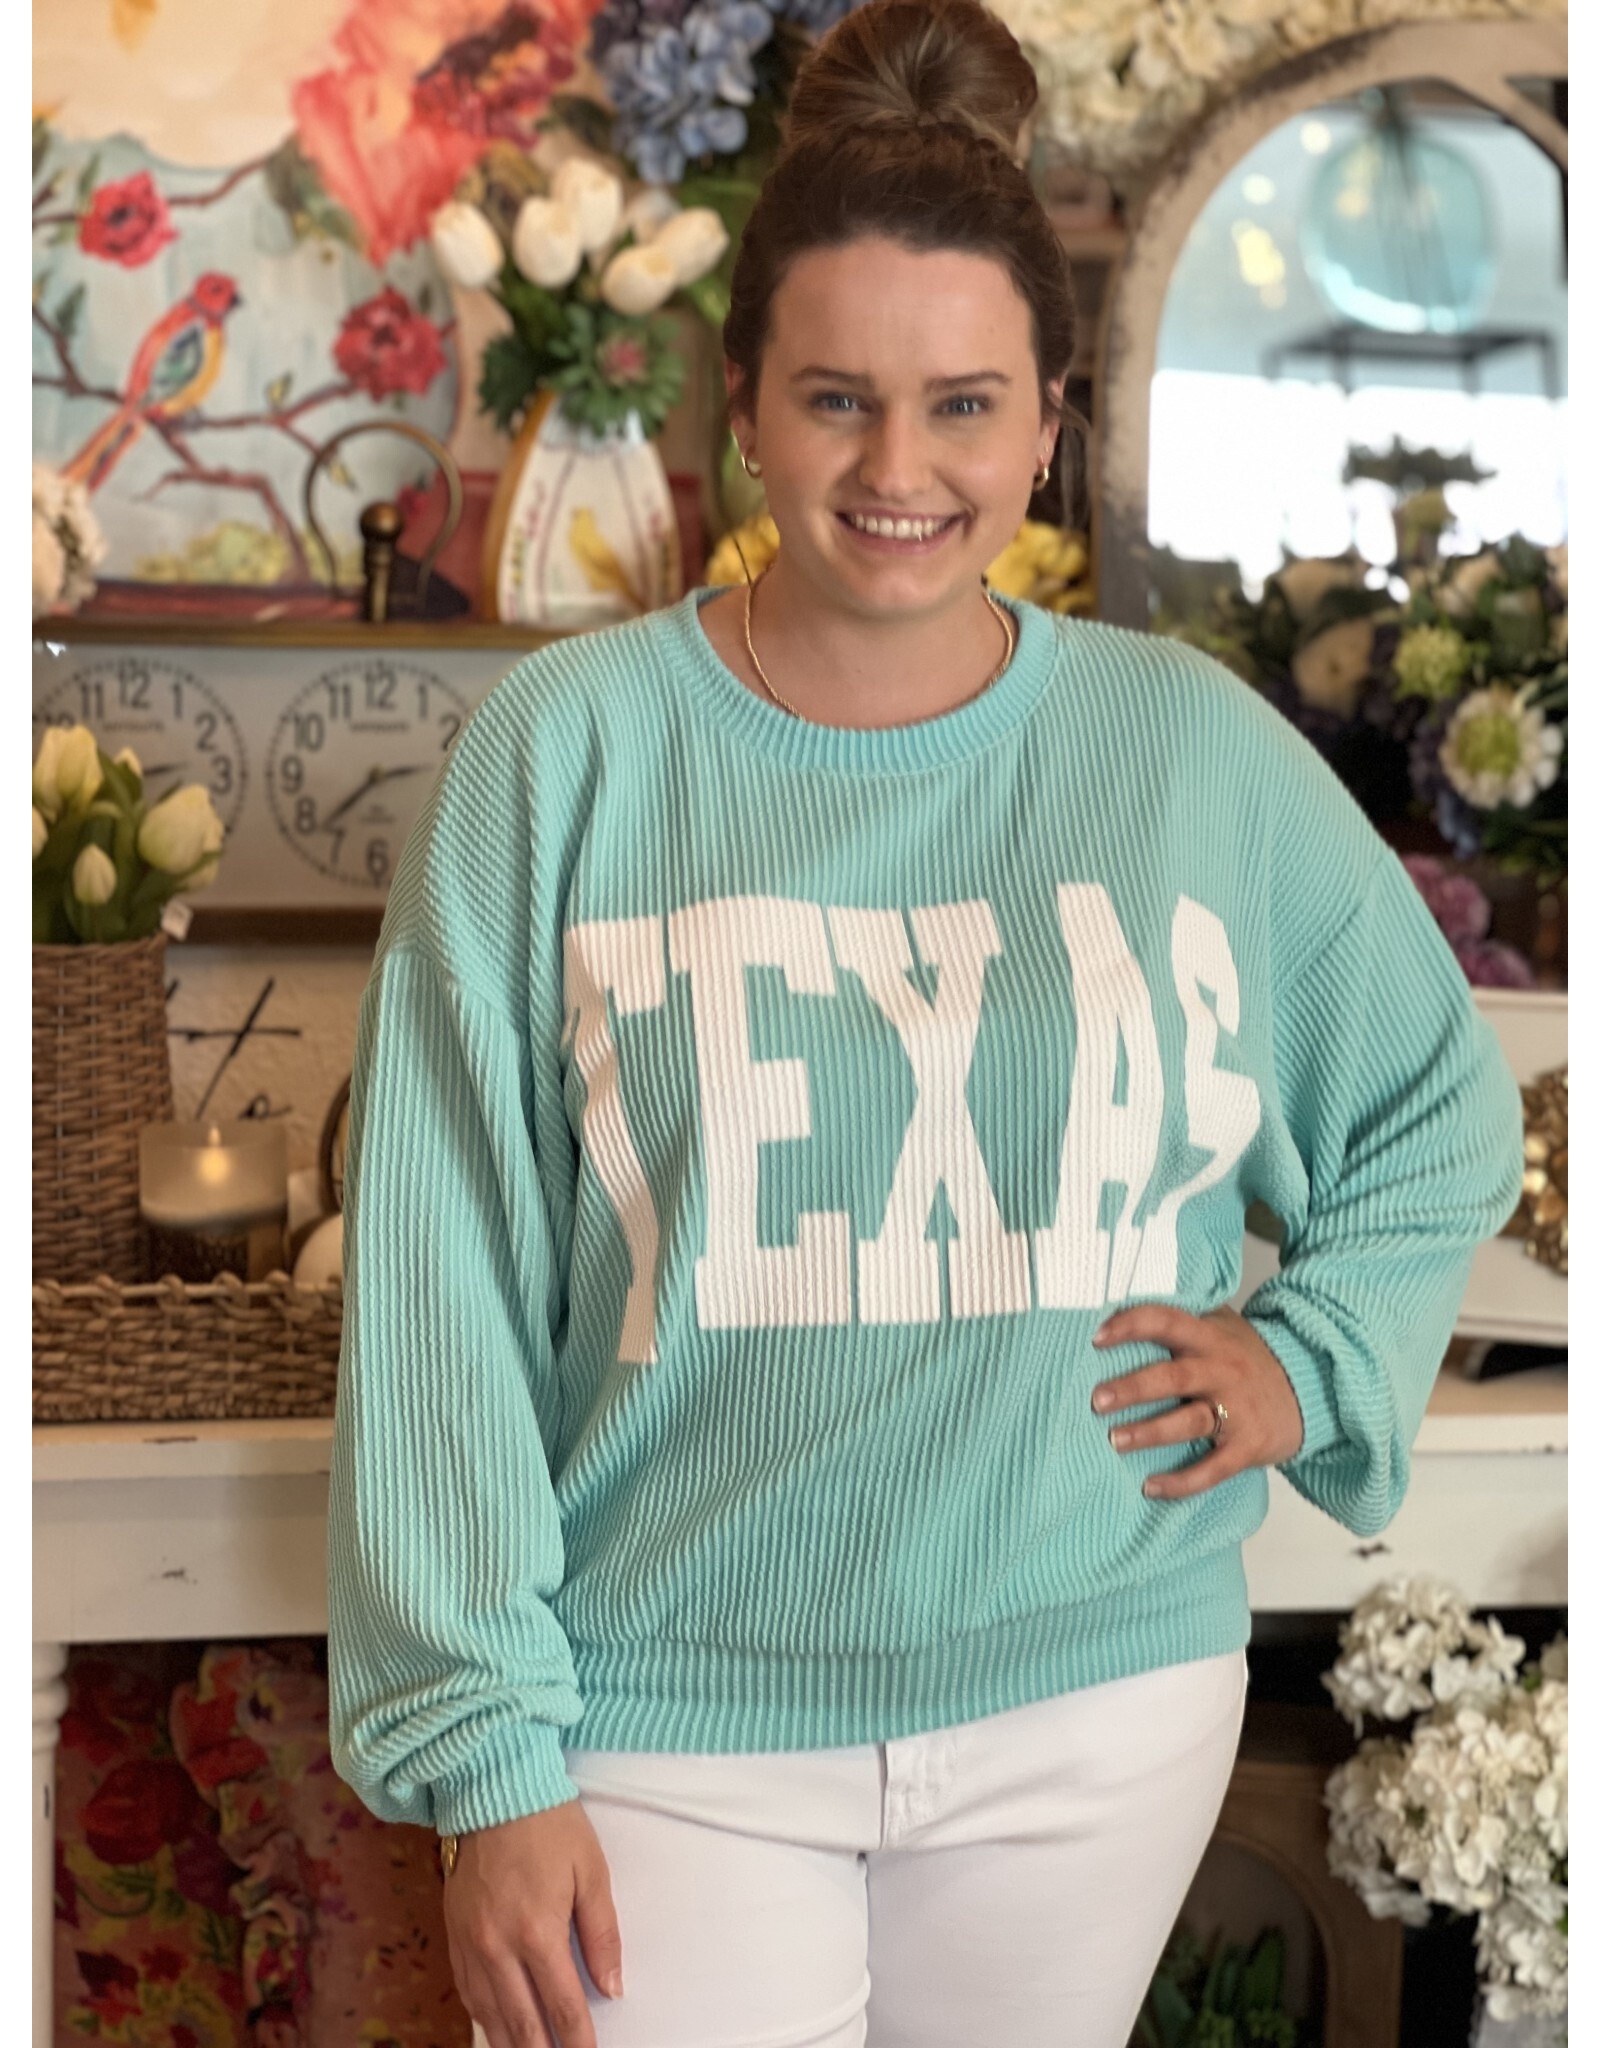 Texas Cord Sweatshirt in Aqua